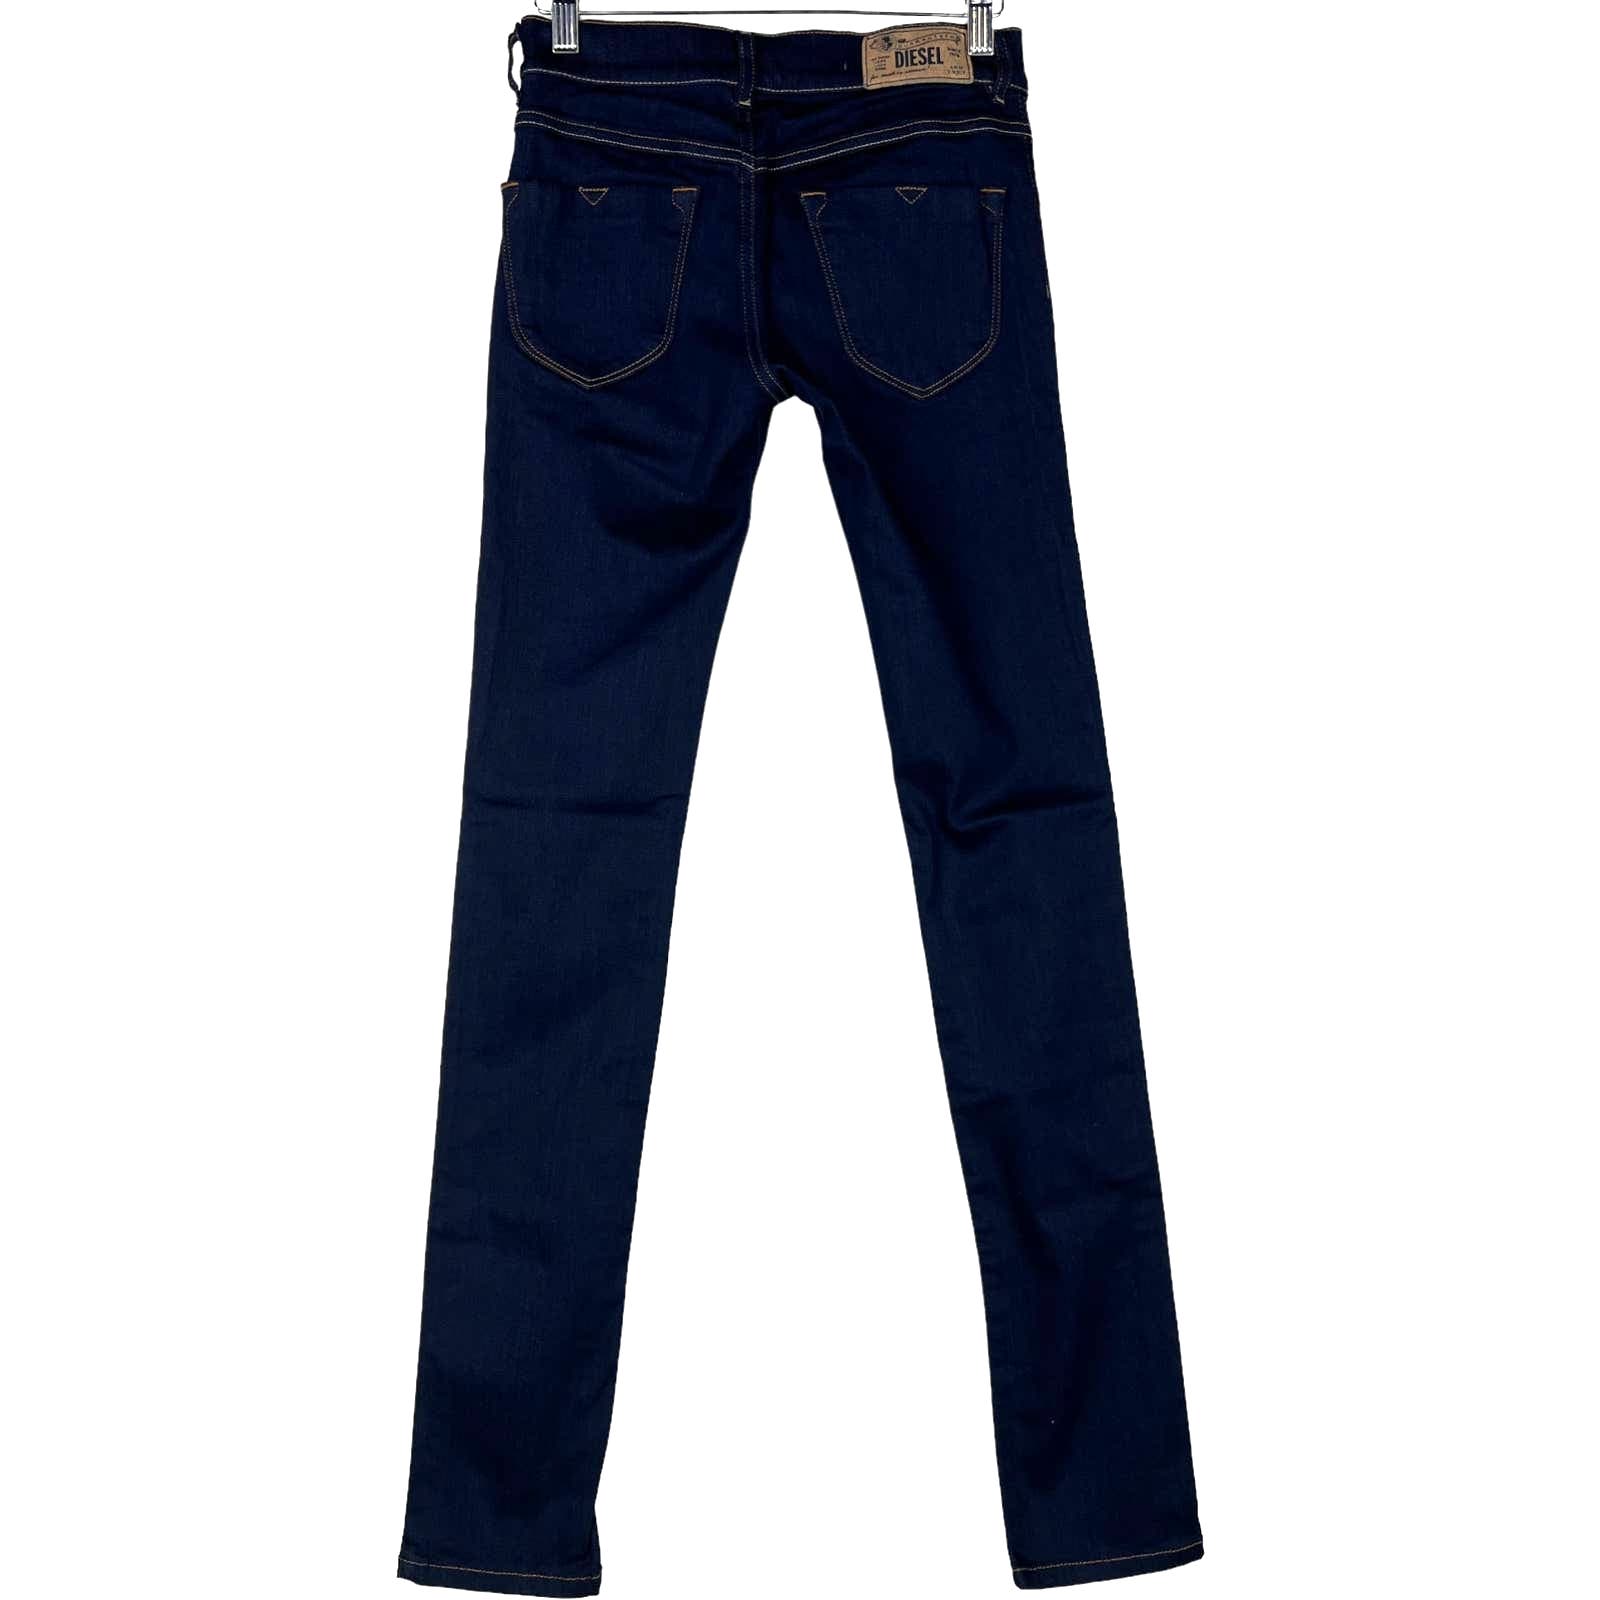 Diesel Women Denim Blue Jeans EU 26 Skinny Casual Cotton